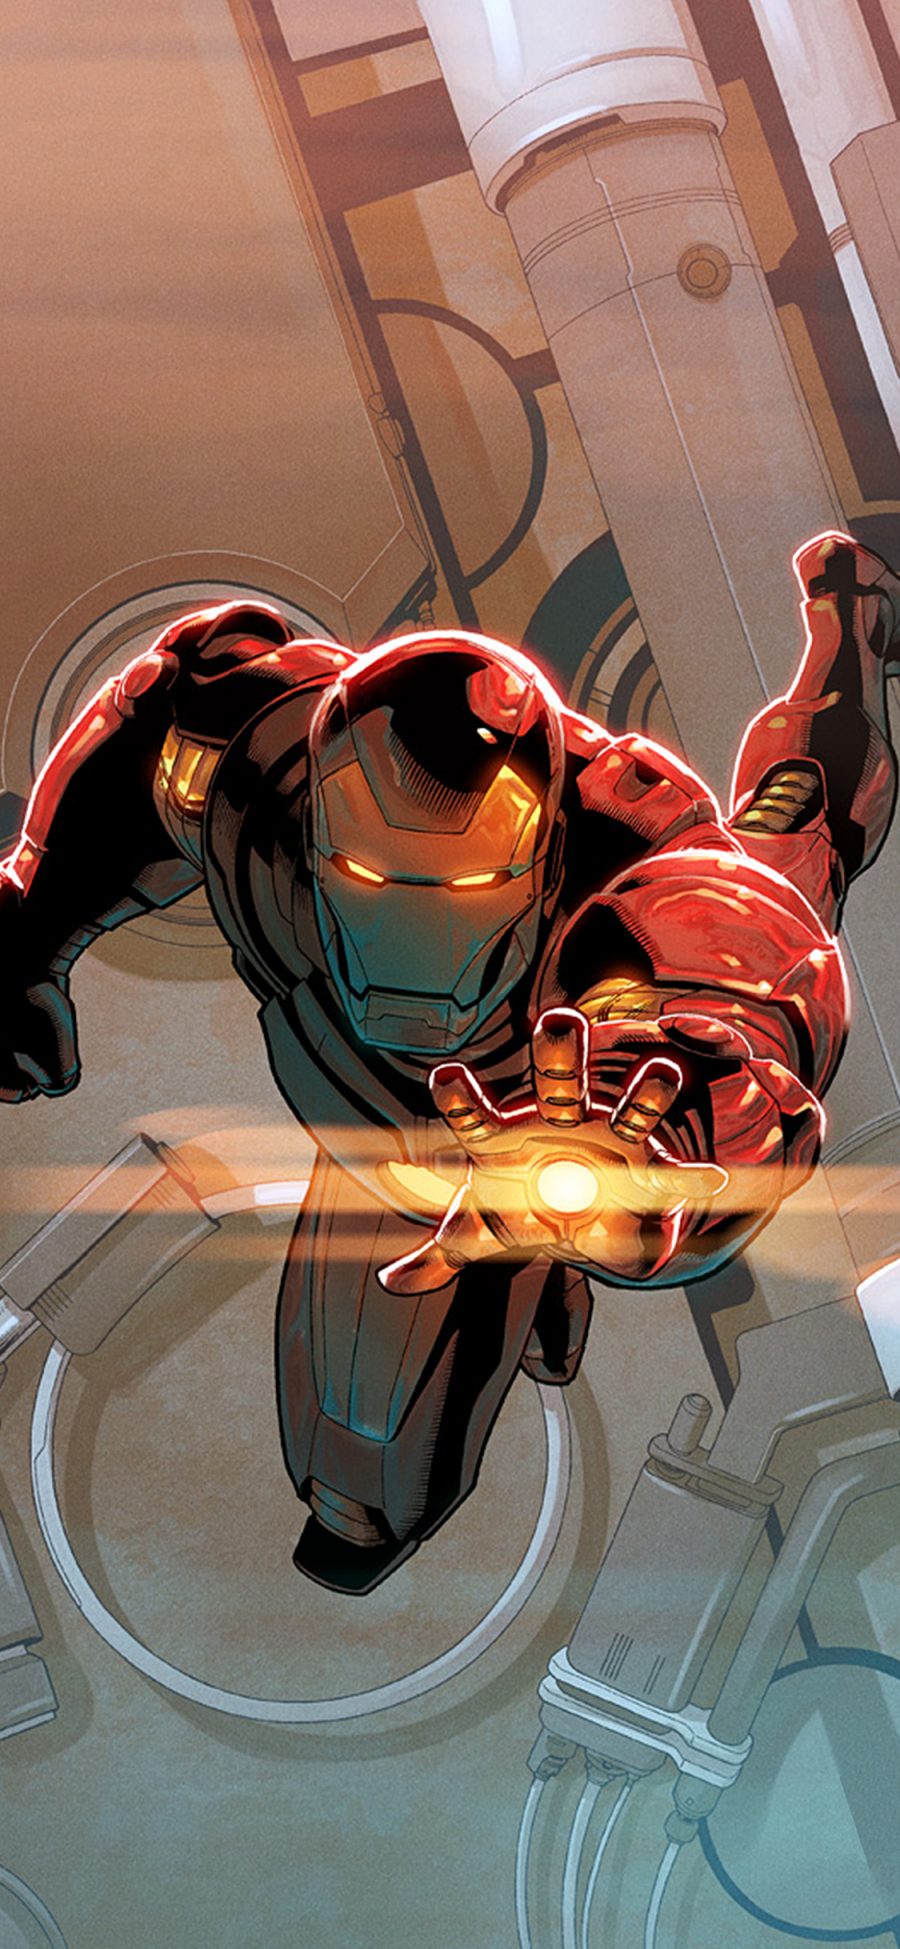 [2436×1125]钢铁侠 复仇者联盟 超级英雄 漫威 欧美 苹果手机动漫壁纸图片